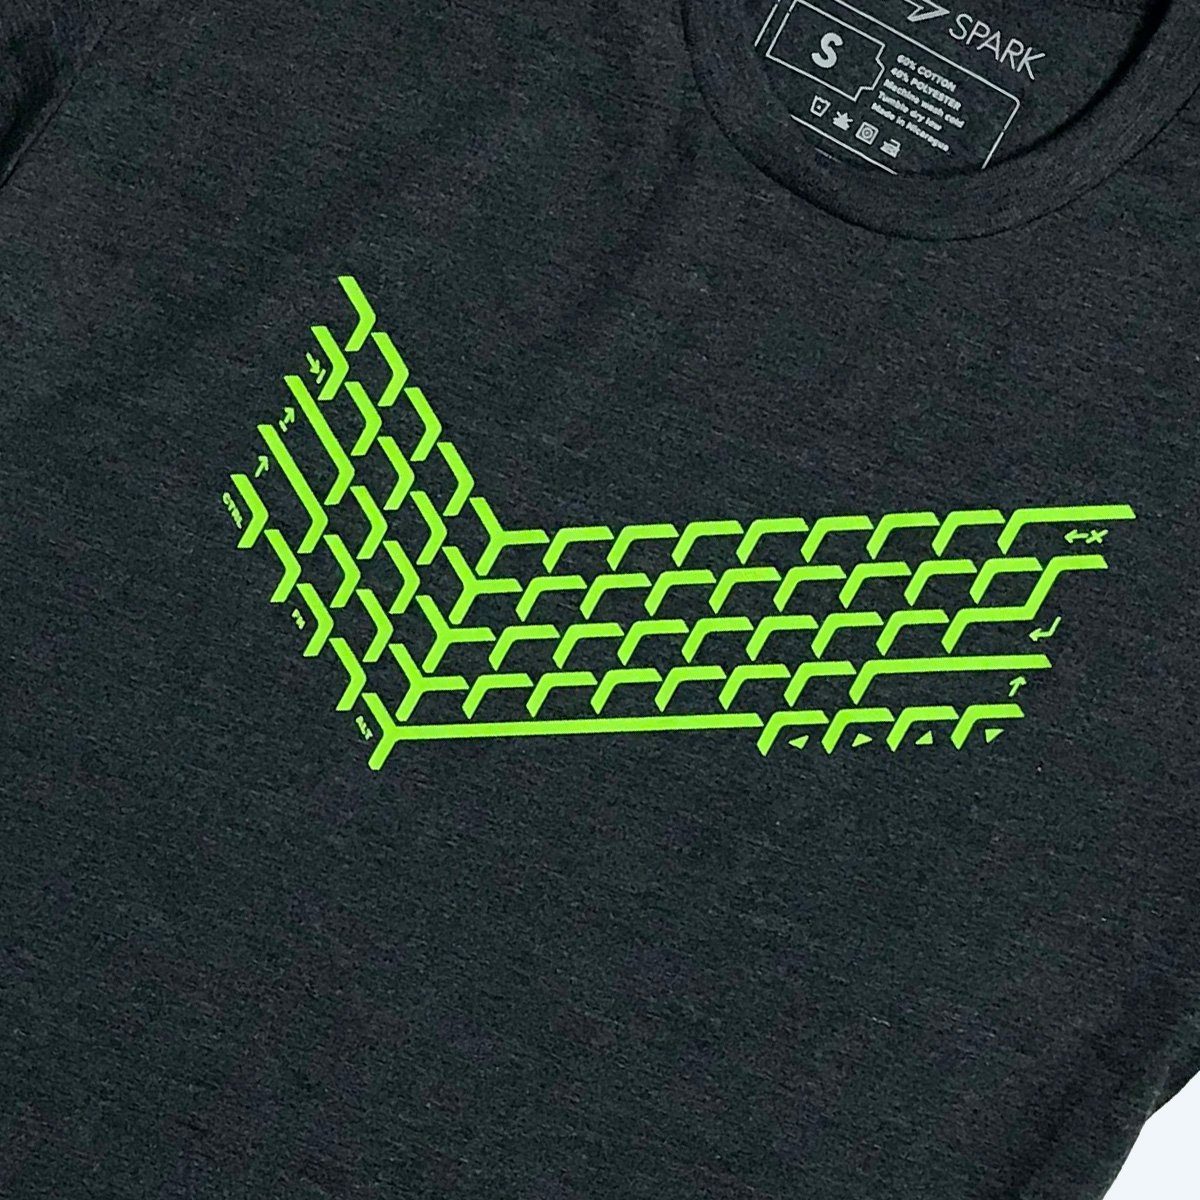 Verified T-Shirt Gamer Design